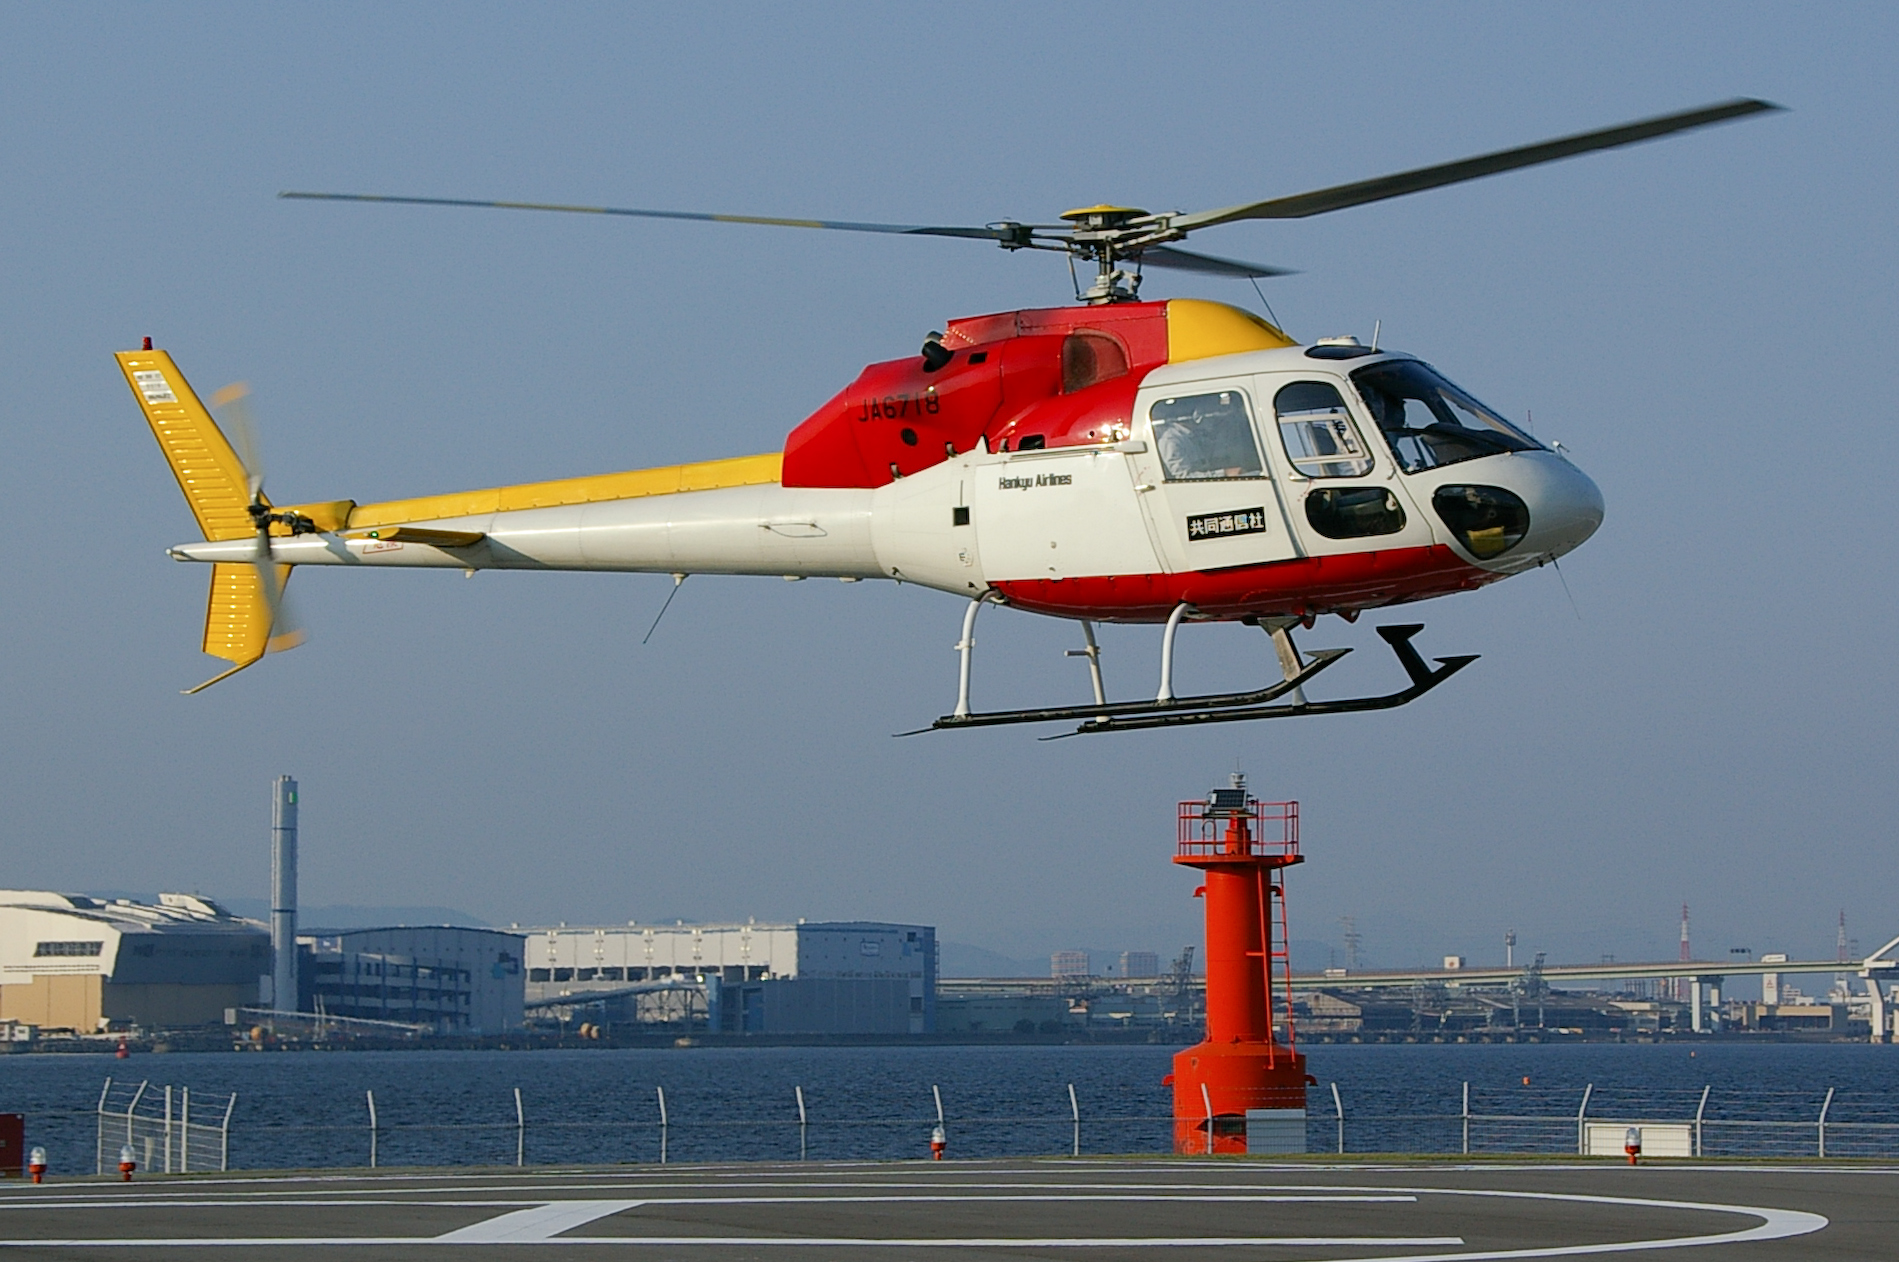 Eurocopter AS-355 Ecureuil 2 previous